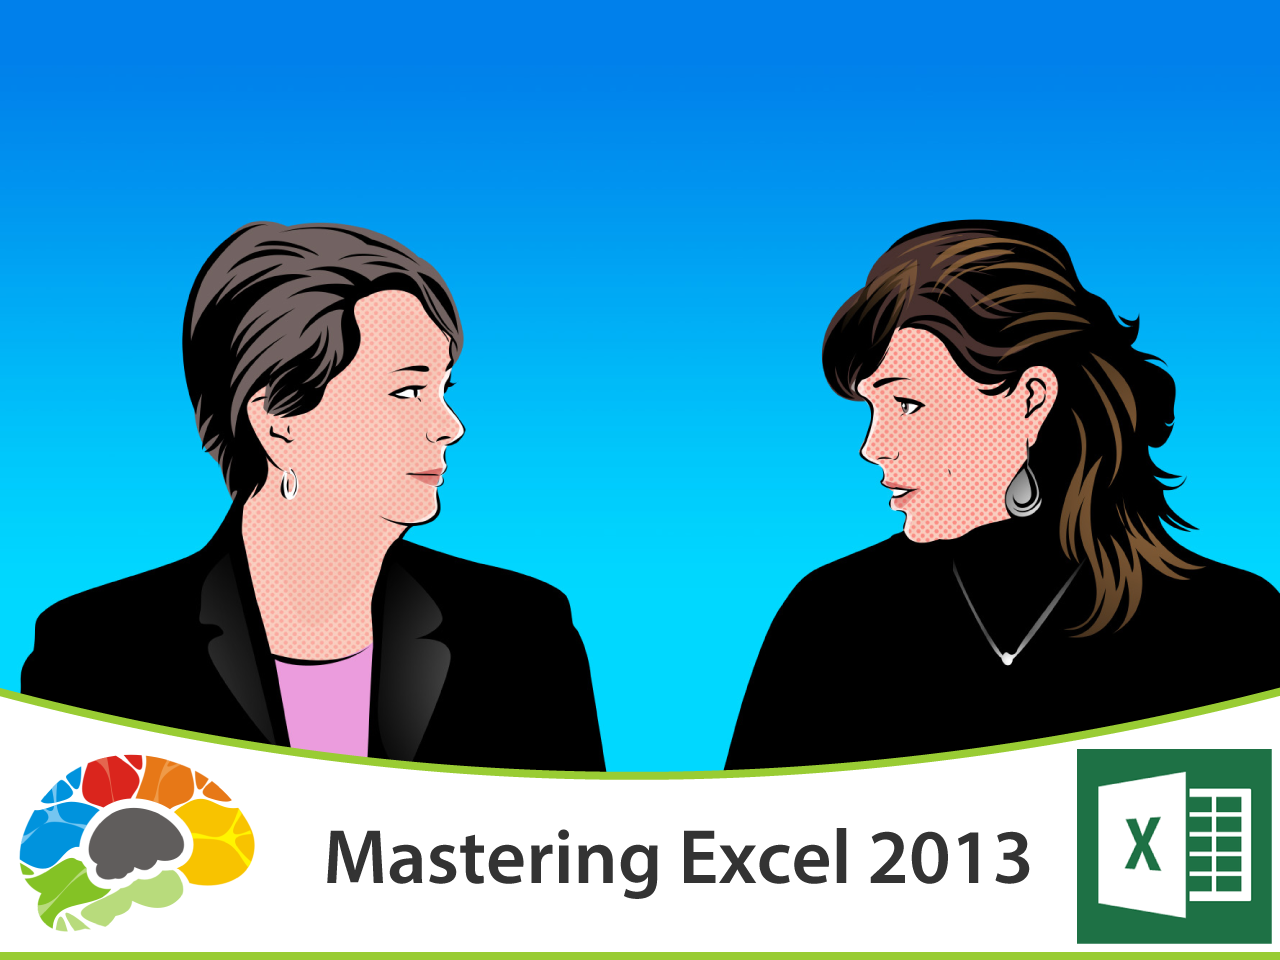 Mastering Excel 2013